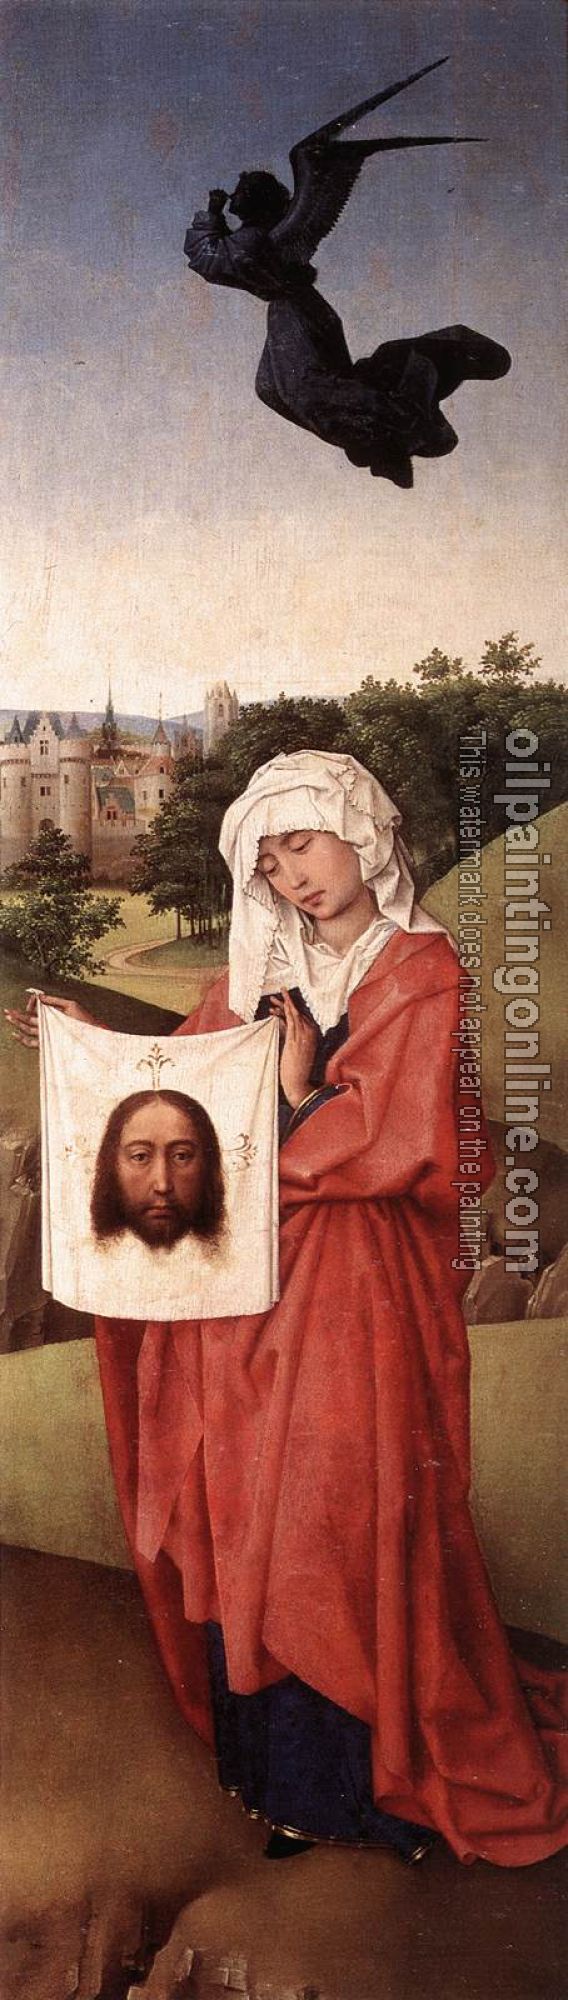 Weyden, Rogier van der - Crucifixion Triptych-right wing